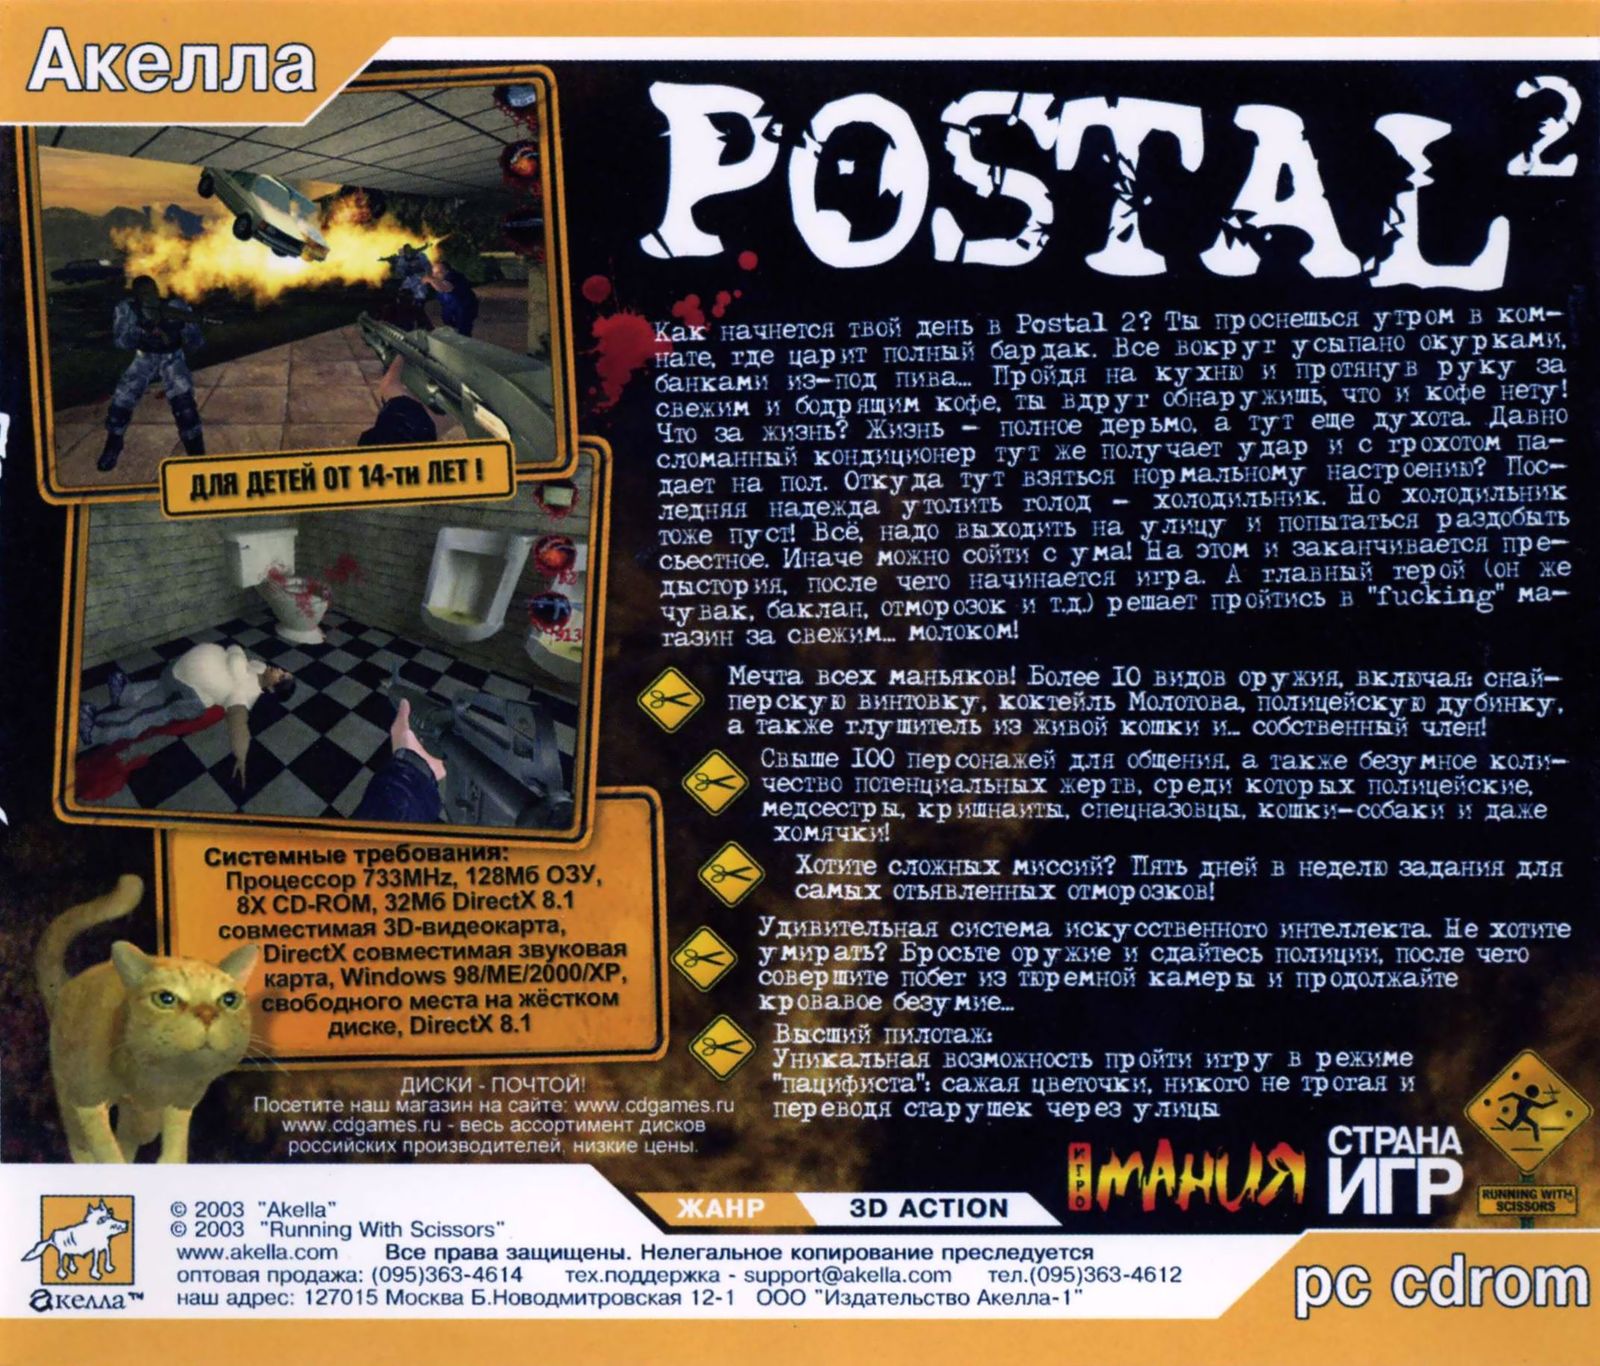 Postal 2 awp delete review скачать на торрент фото 51